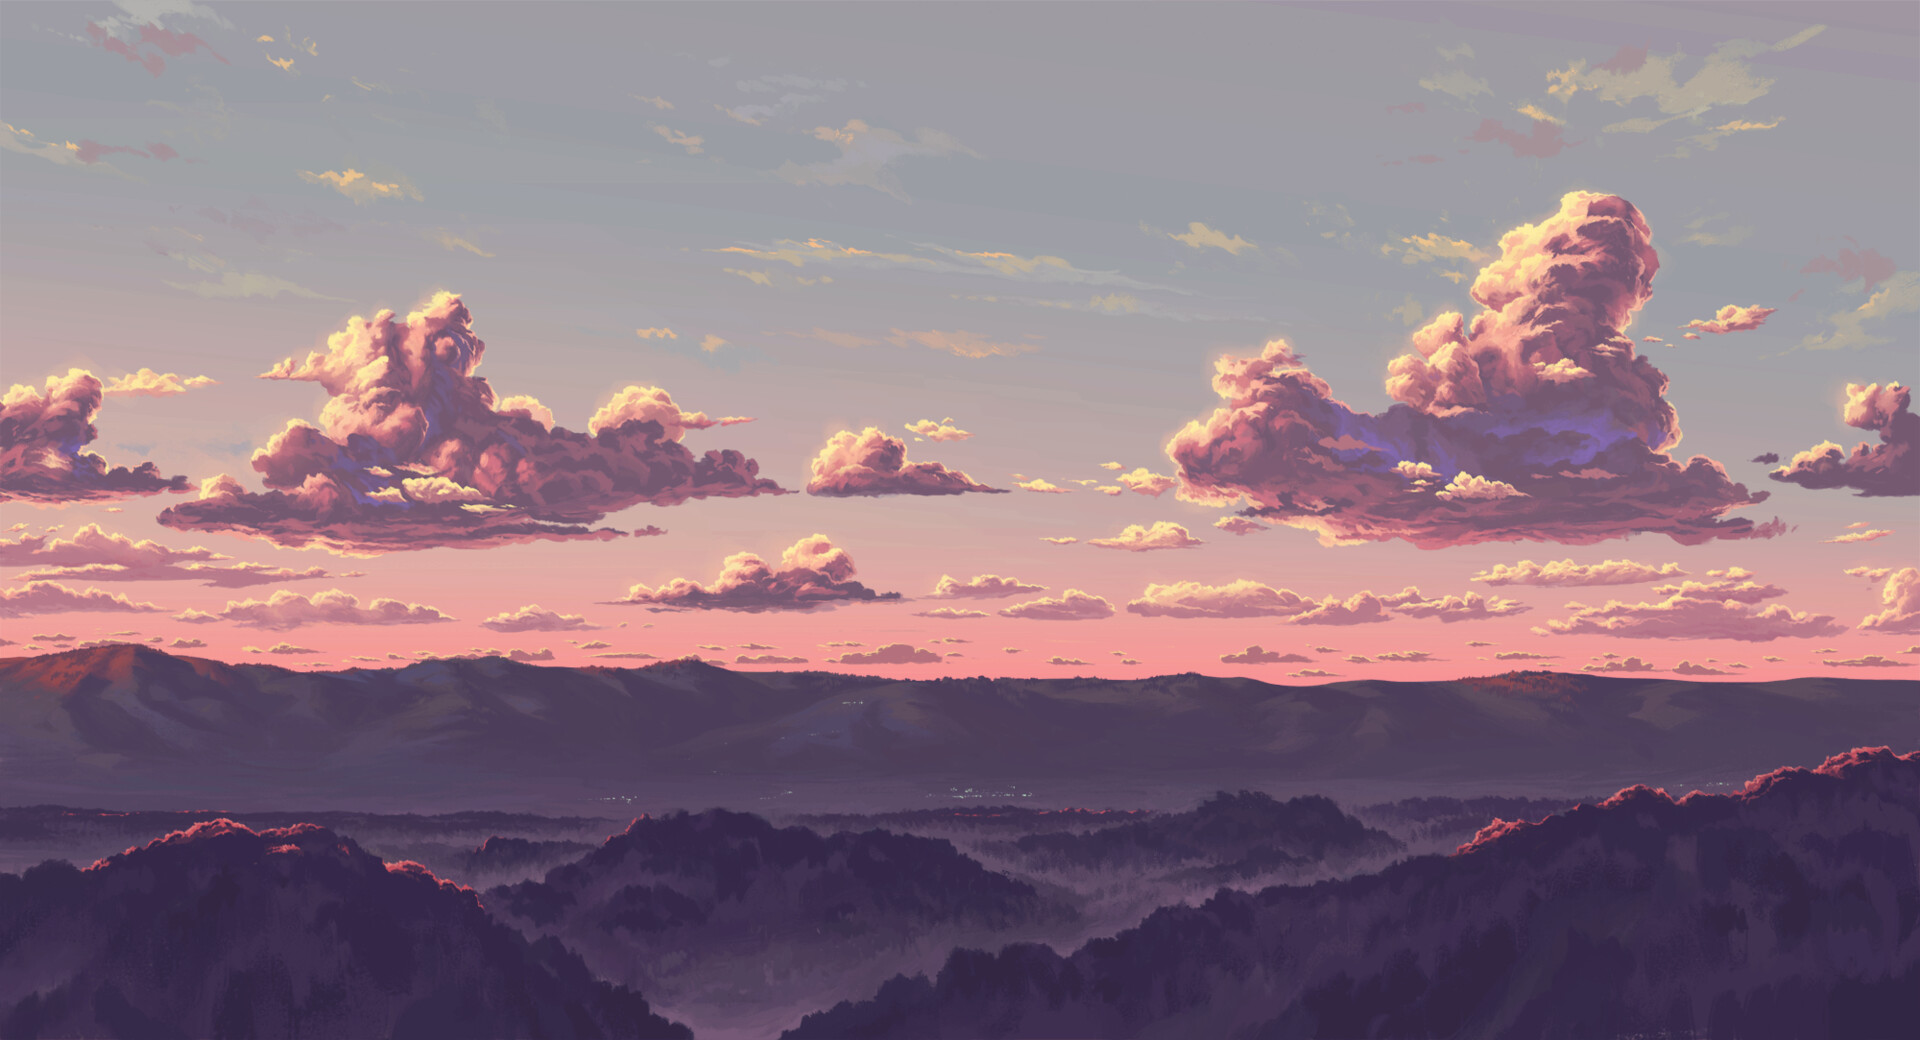 Pixel Sunset Digital Art Wallpapers